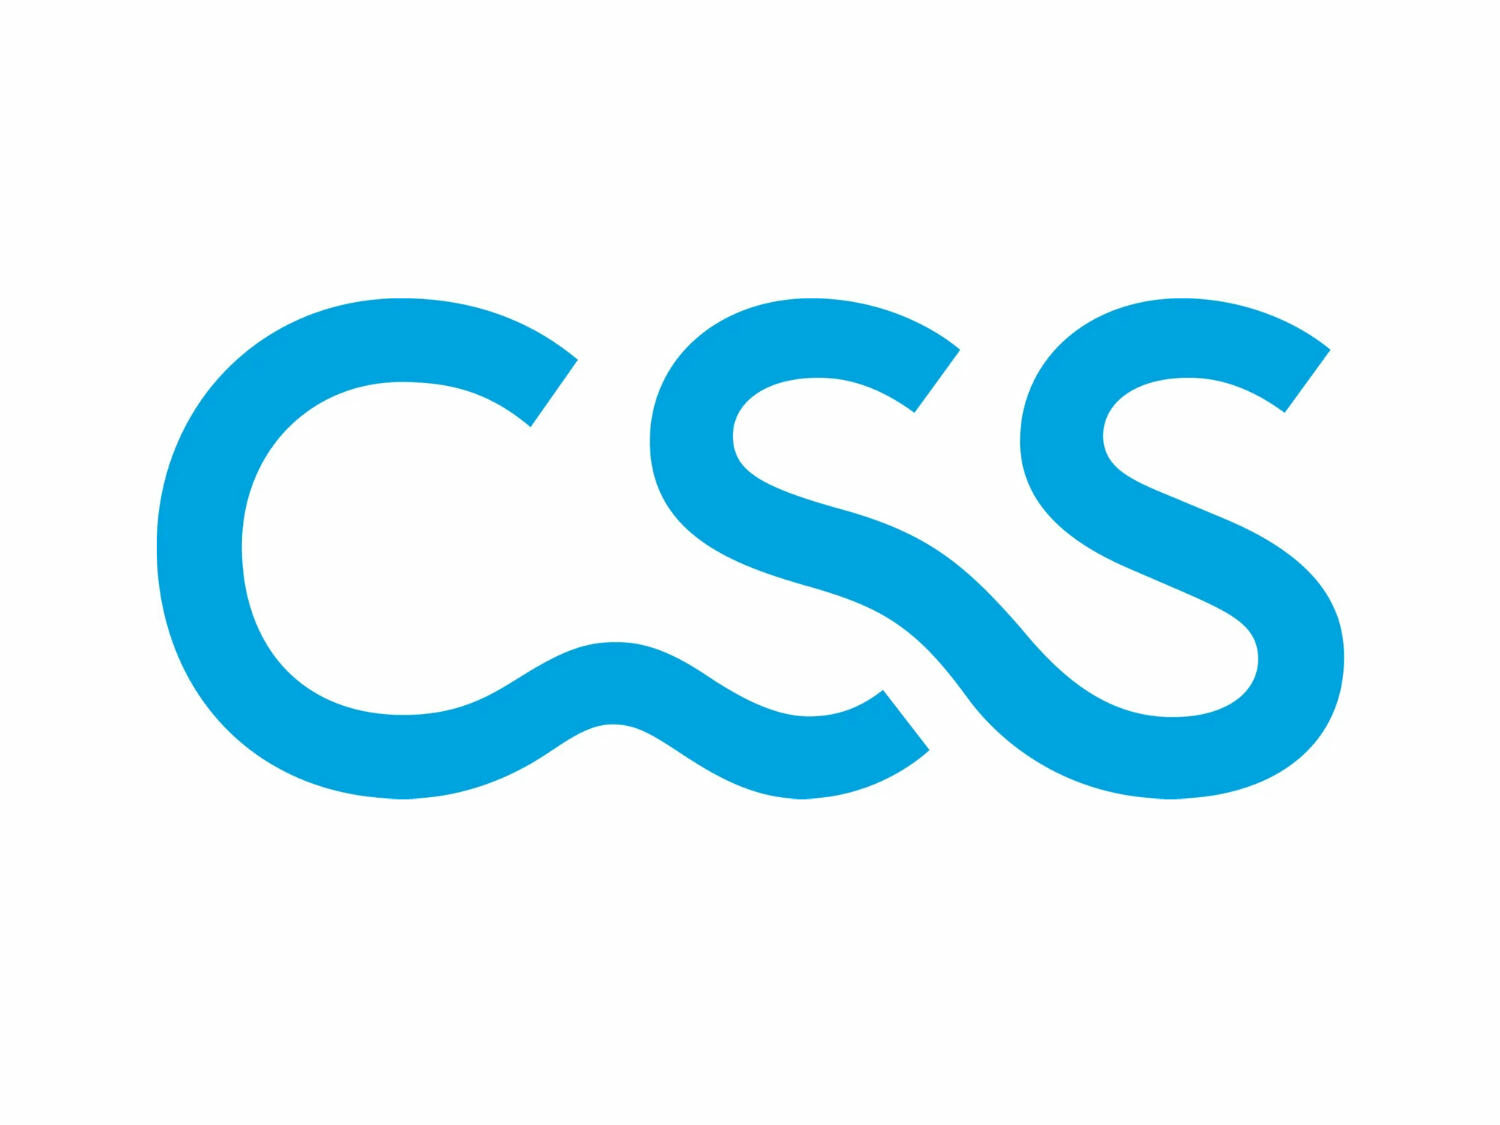 CSS Versicherung Logo